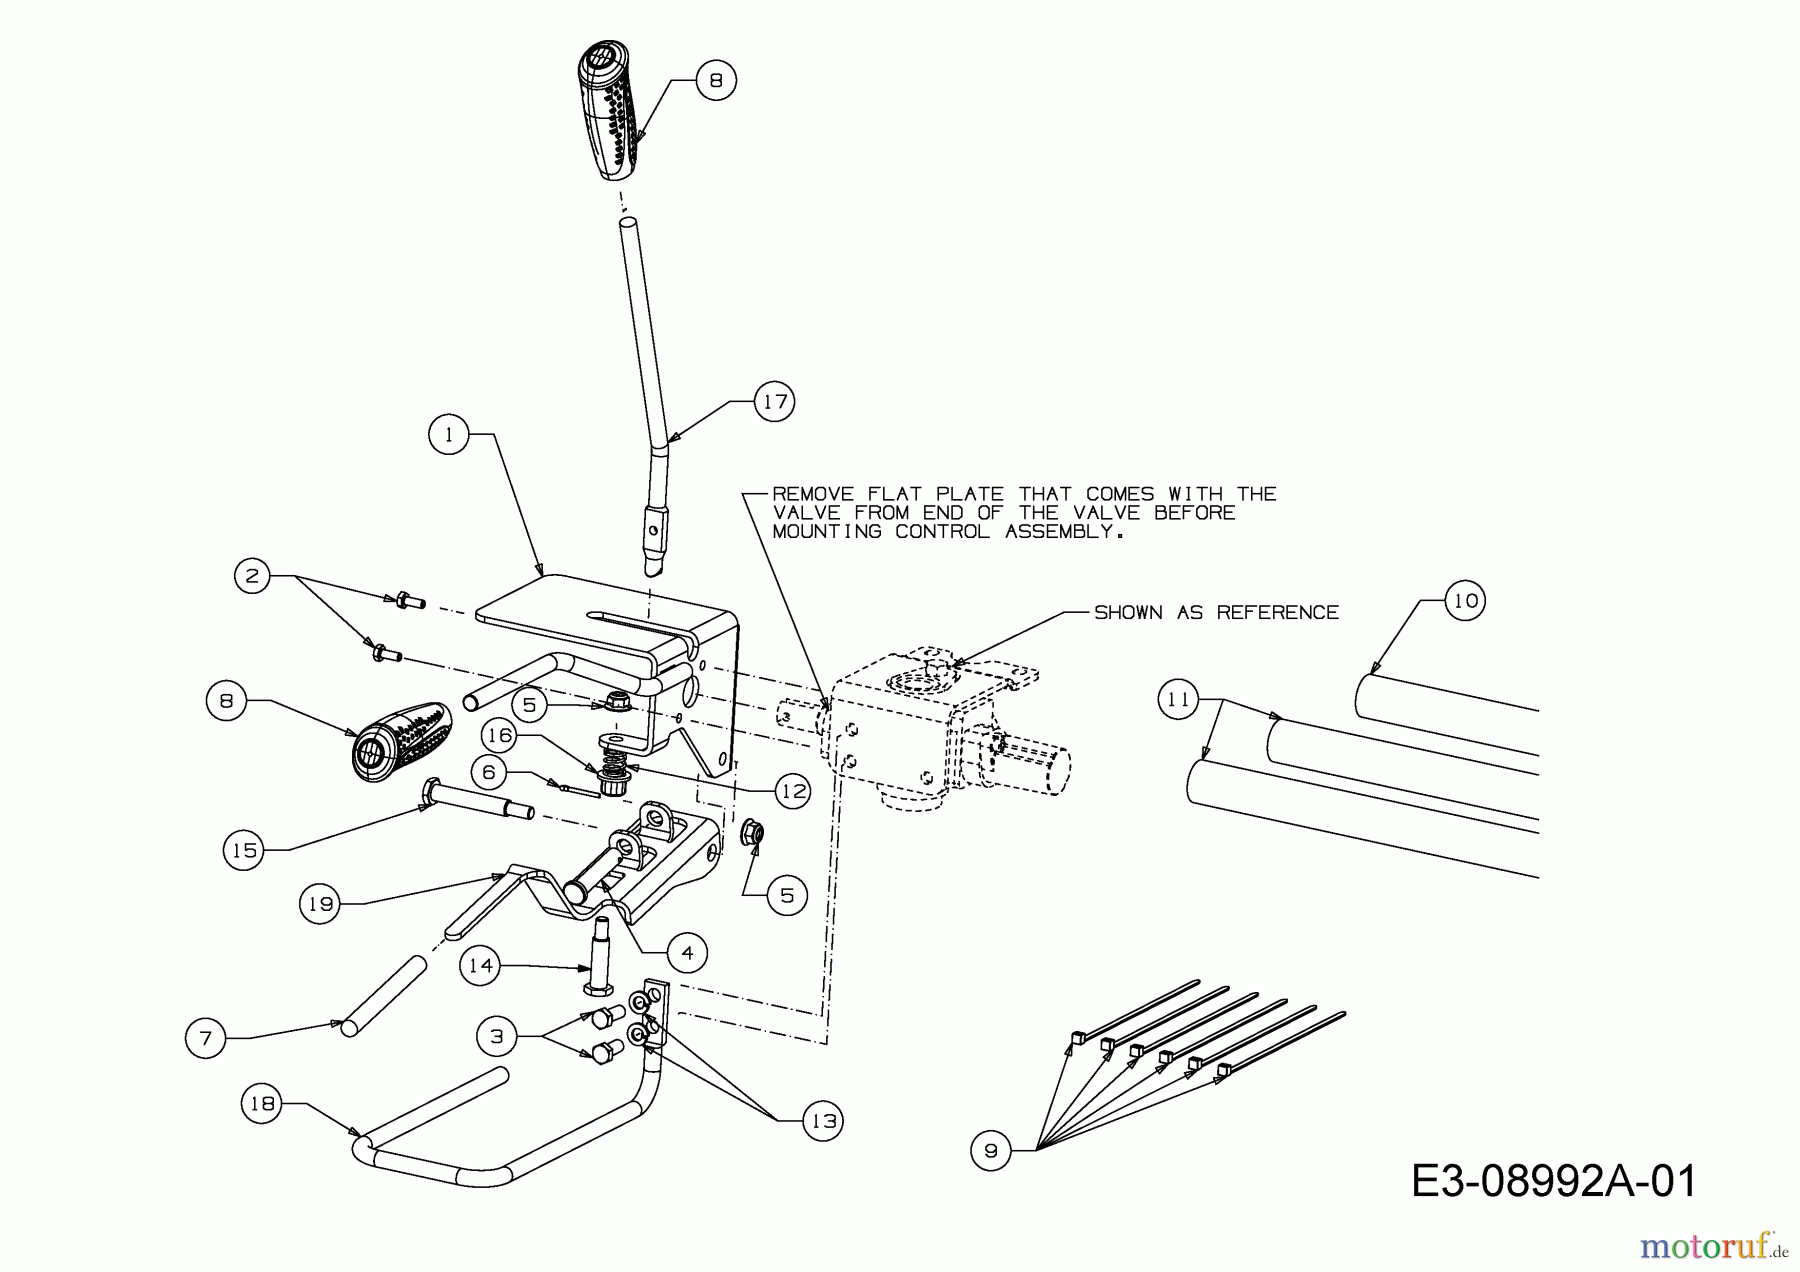  MTD Log splitter LS 550 24AI550C678  (2015) Control lever